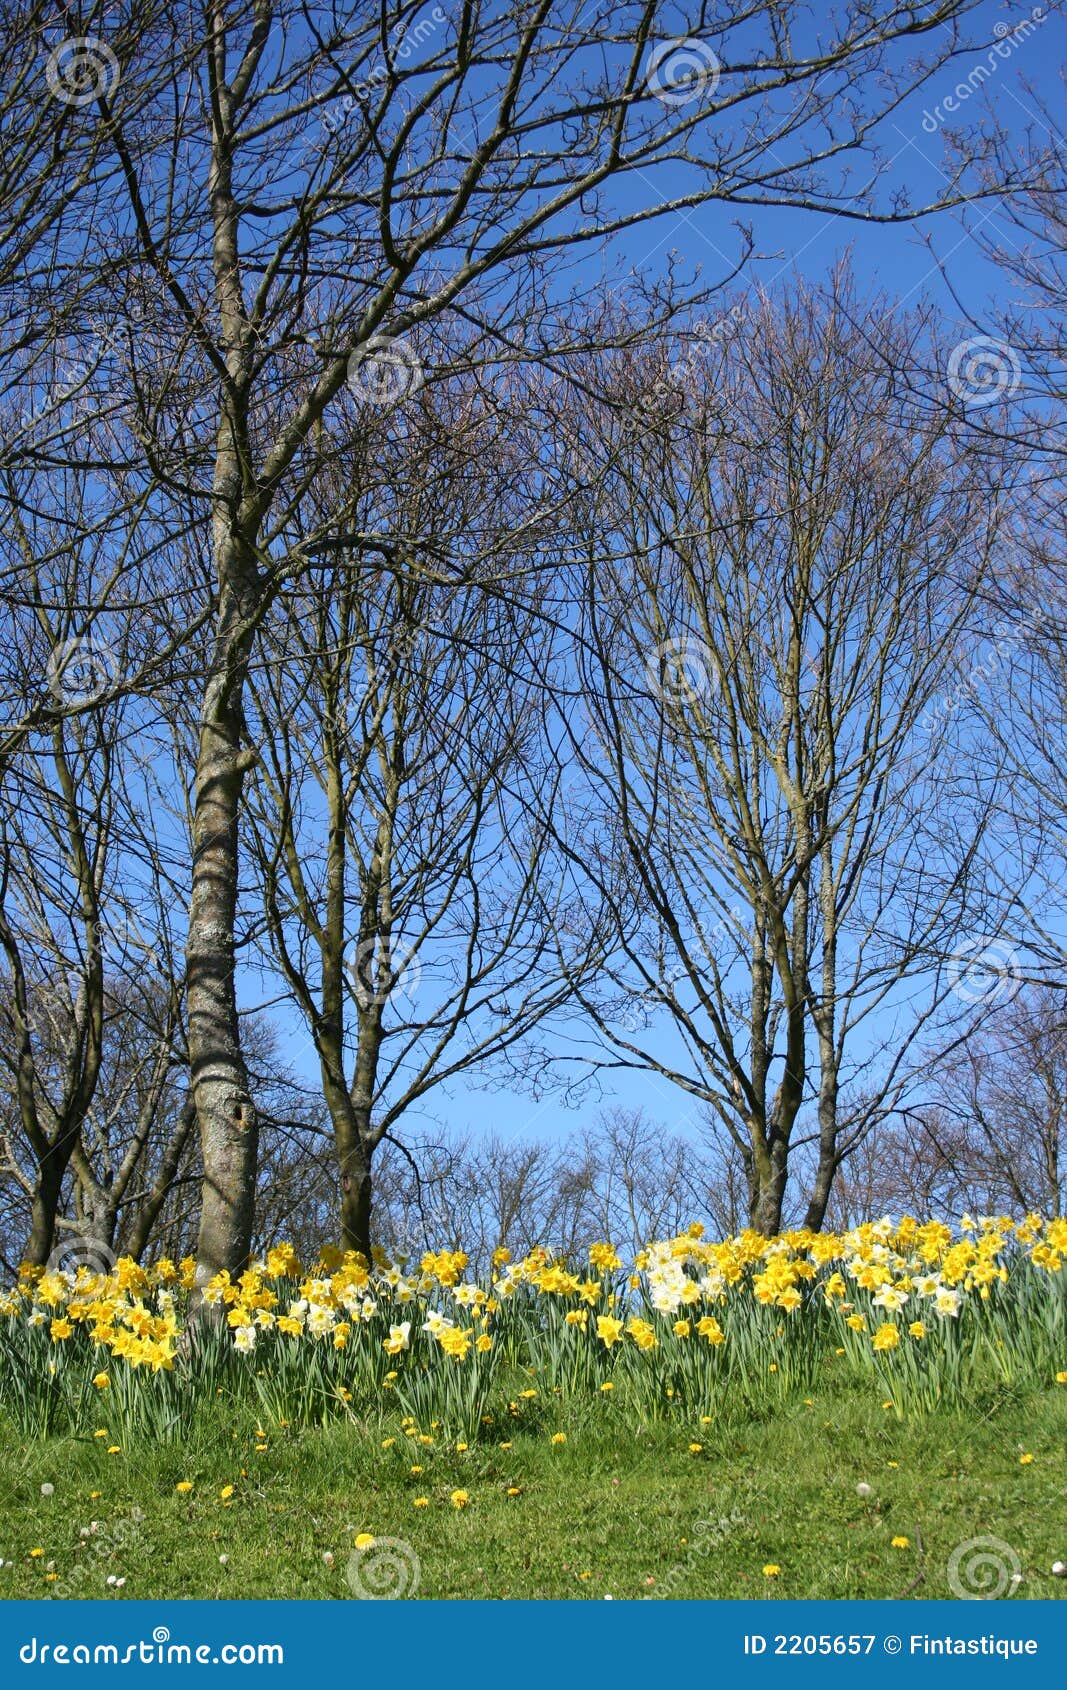 woodlands in springtime